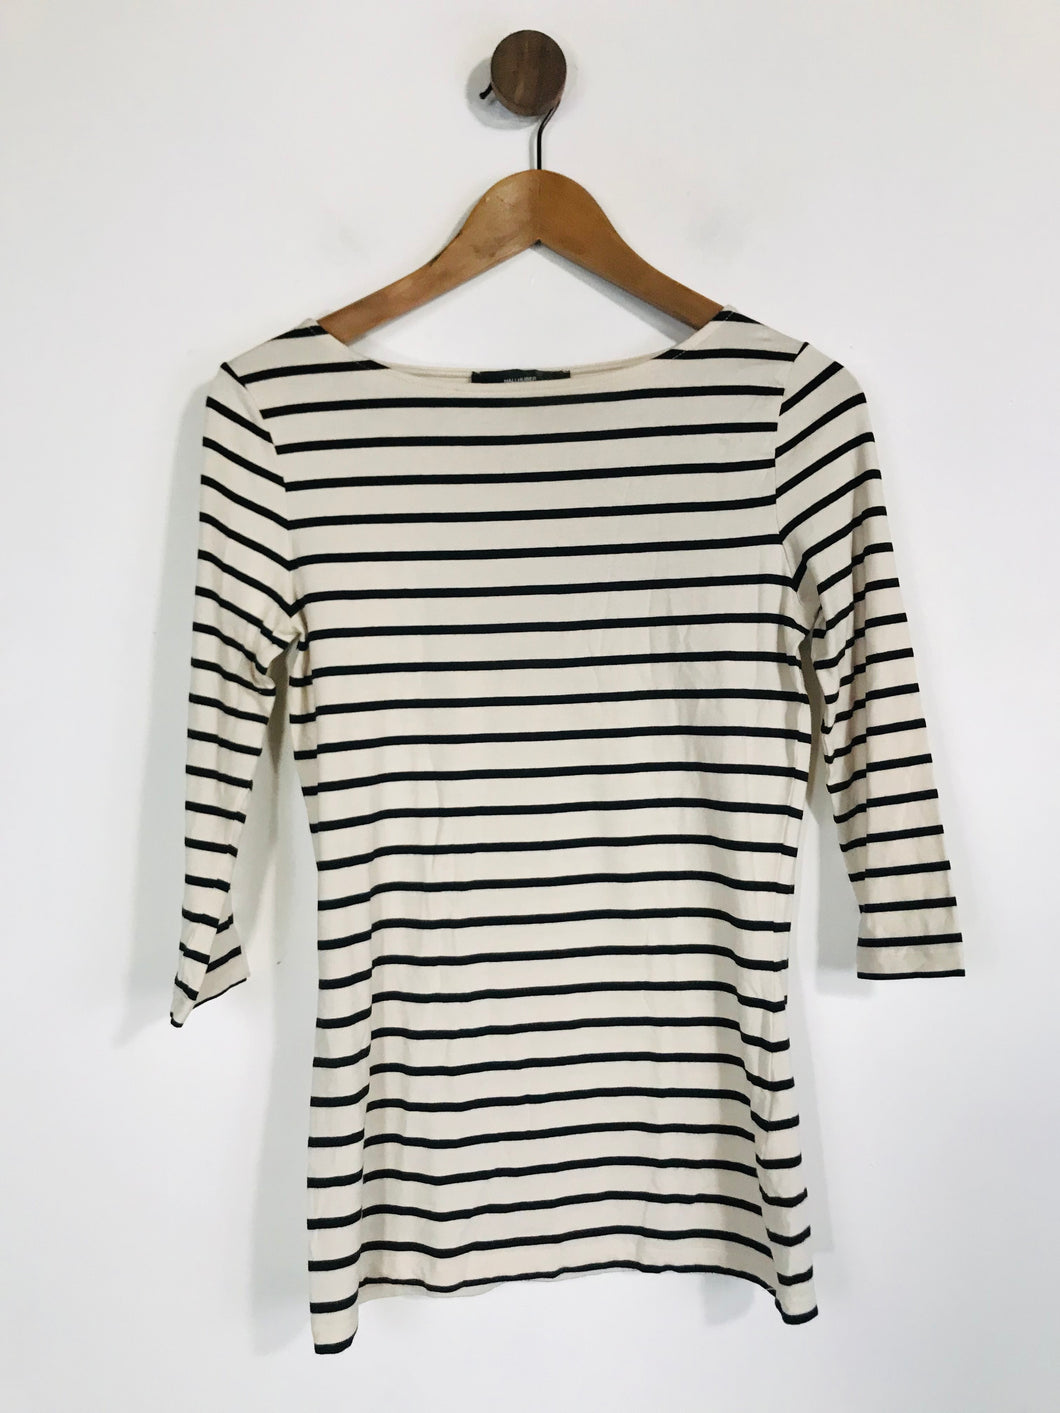 HallHuber Women's Striped T-Shirt | S UK8 | Multicoloured